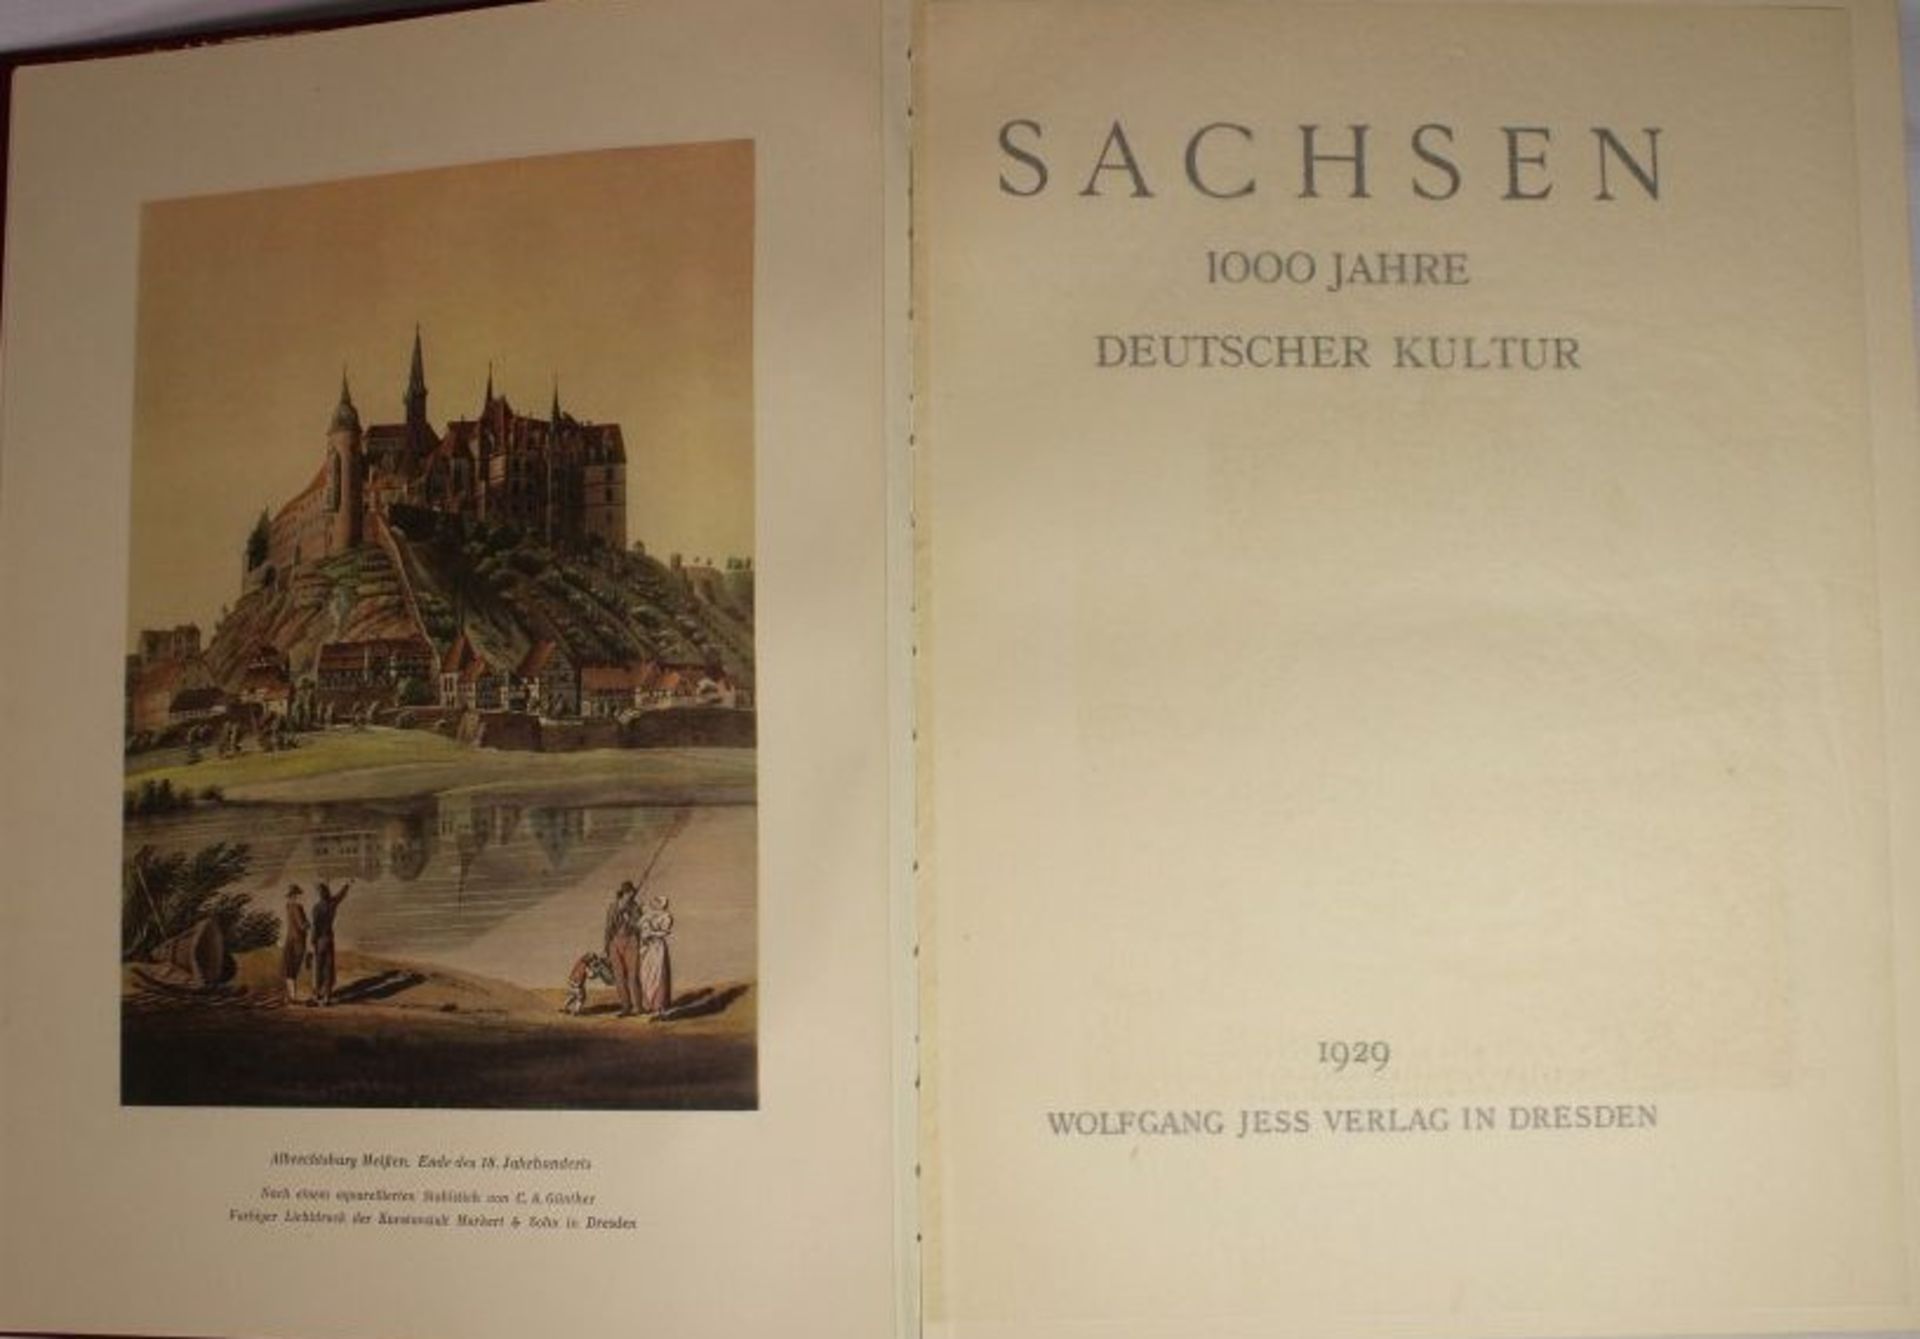 Sachsen - 1000 Jahre Deutsche Kultur, 1929, Wolfgang Jess Verlag Dresden. - Bild 2 aus 3